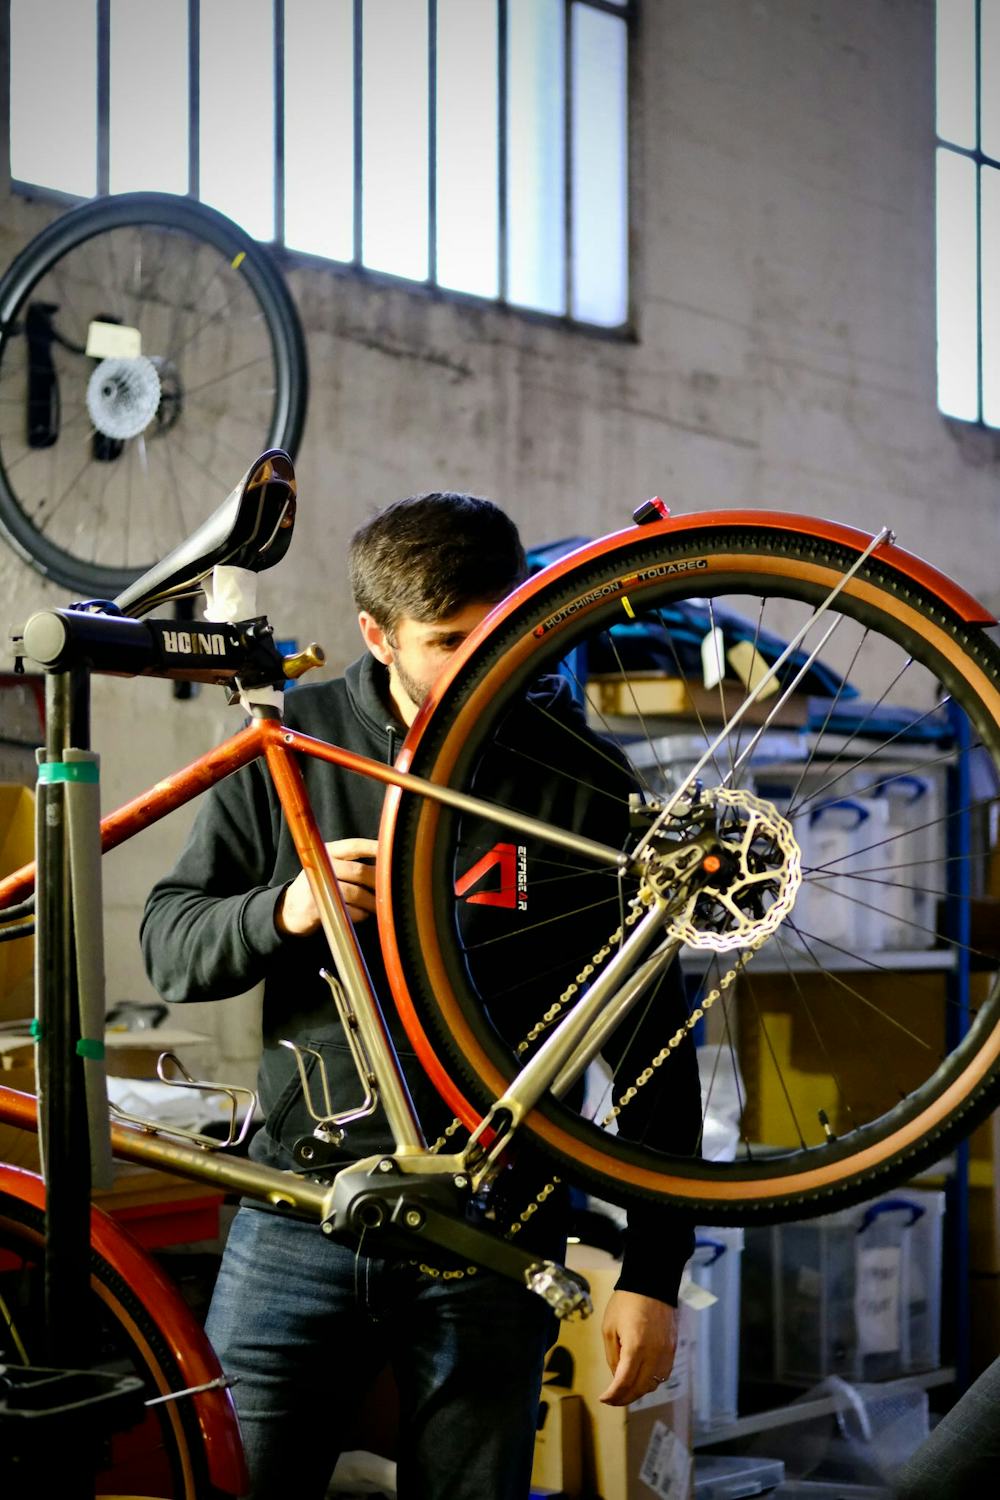 Constitution et fabrication d'un pneu vélo : étape par étape